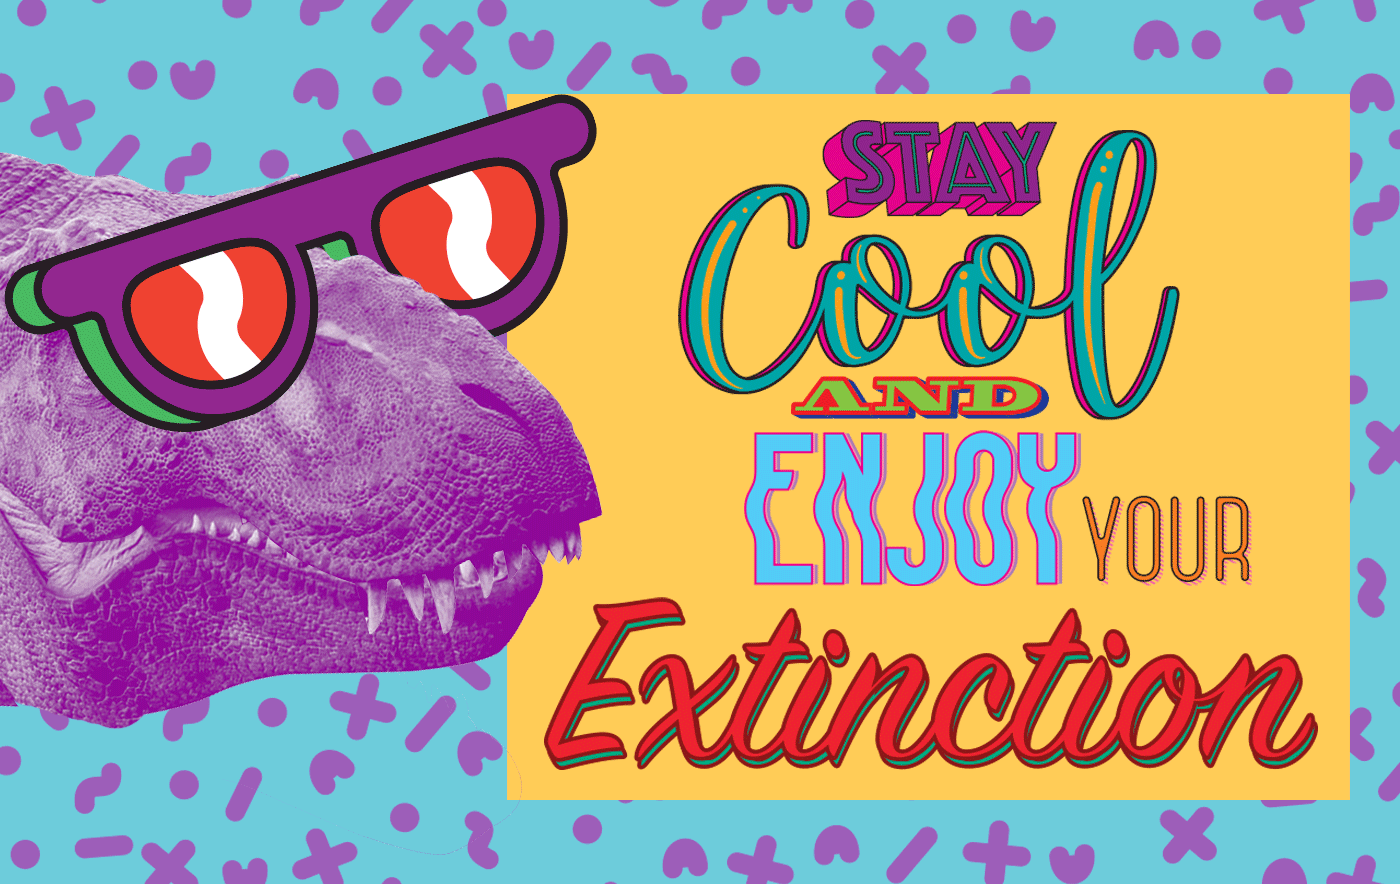 Dinosaur ILLUSTRATION  sticker t-shirt cool summer extintion